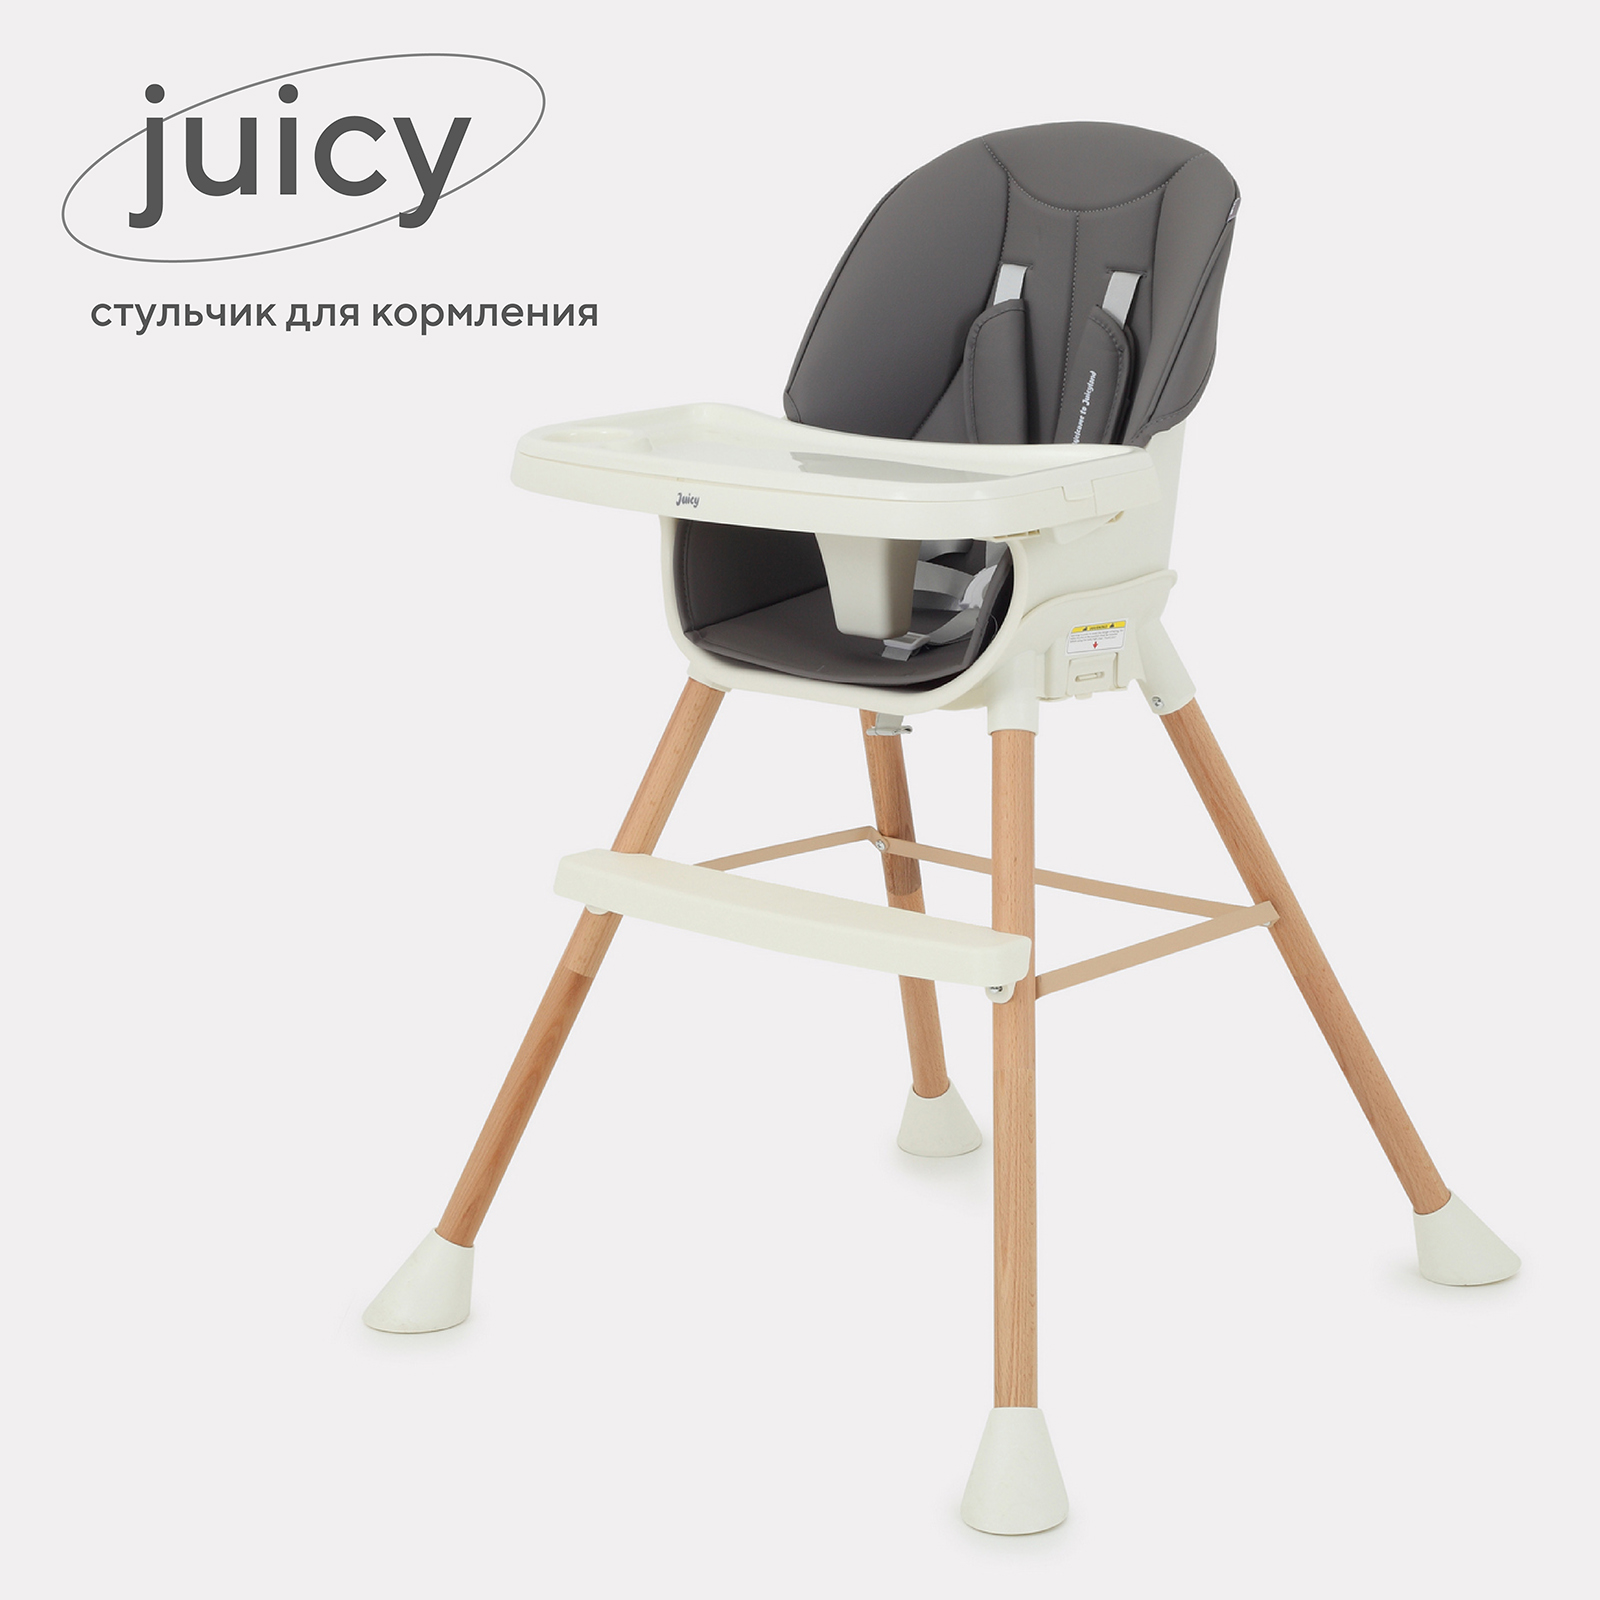 Стульчик для кормления RANT Juicy RH160 Wood grey стульчик для кормления 3 в 1 carrello triumph crl 10302 palette grey